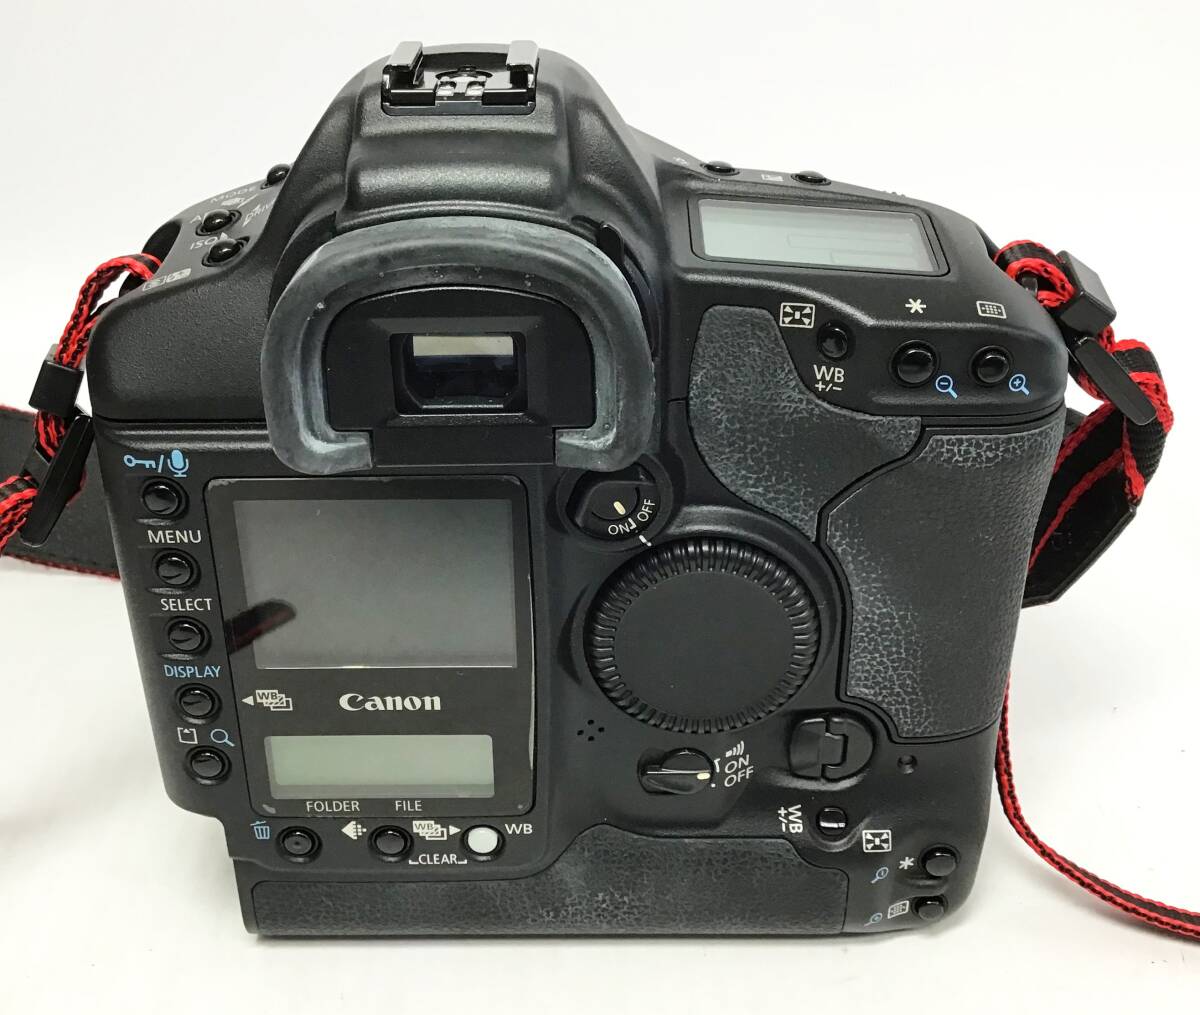 Canon EOS-1 Ds Mark II Digital デジタル一眼レフカメラ ボディ/バッテリー/取説/元箱 CANON_画像4